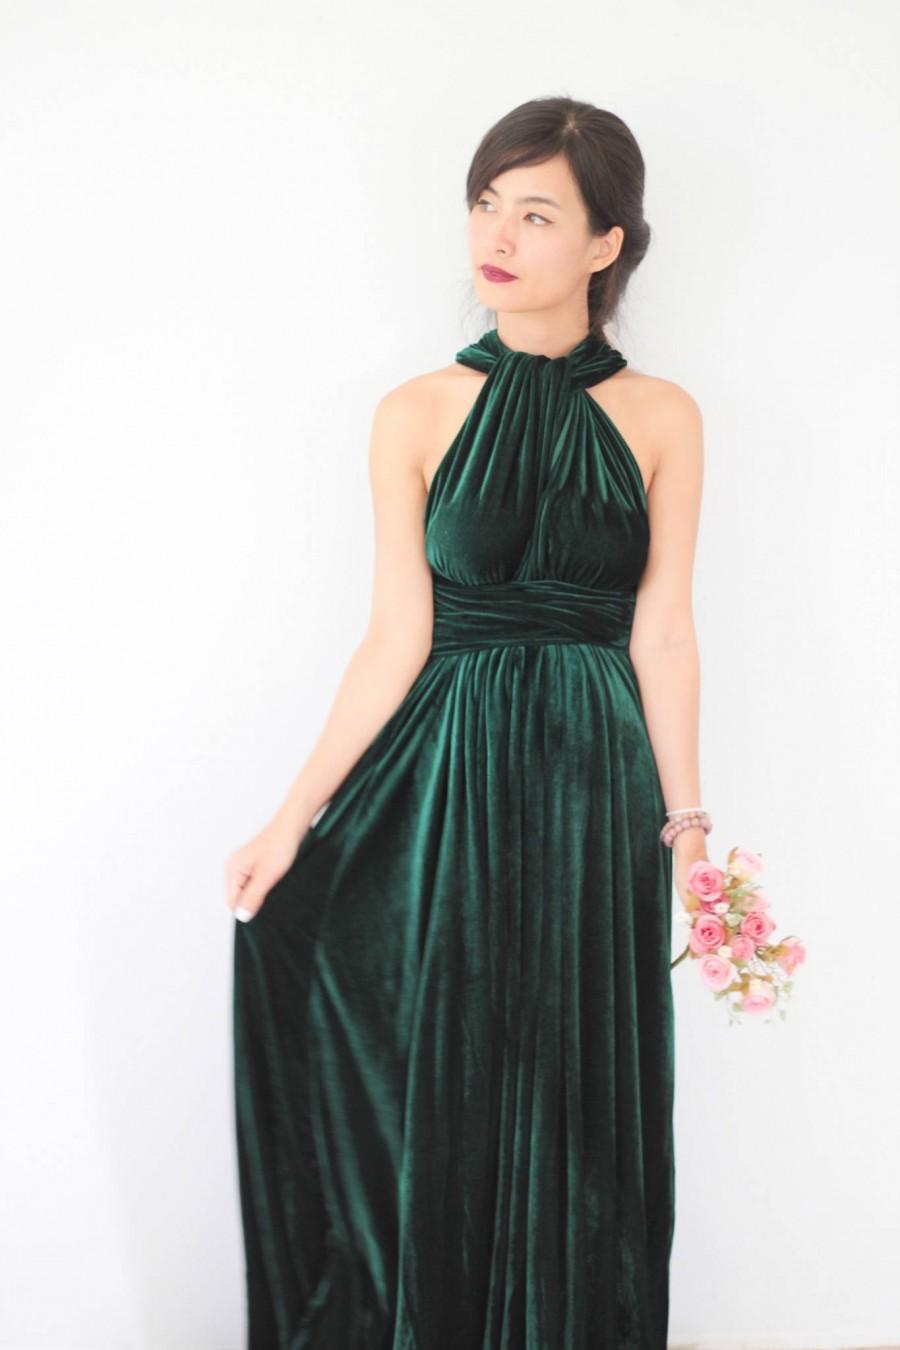 Mariage - Green Velvet Dress, Bridesmaid Dress, Infinity Dress, Prom Dress, Convertible Dress, Wrap Dress, Long Dress, Eveing Dress, Ball Gown